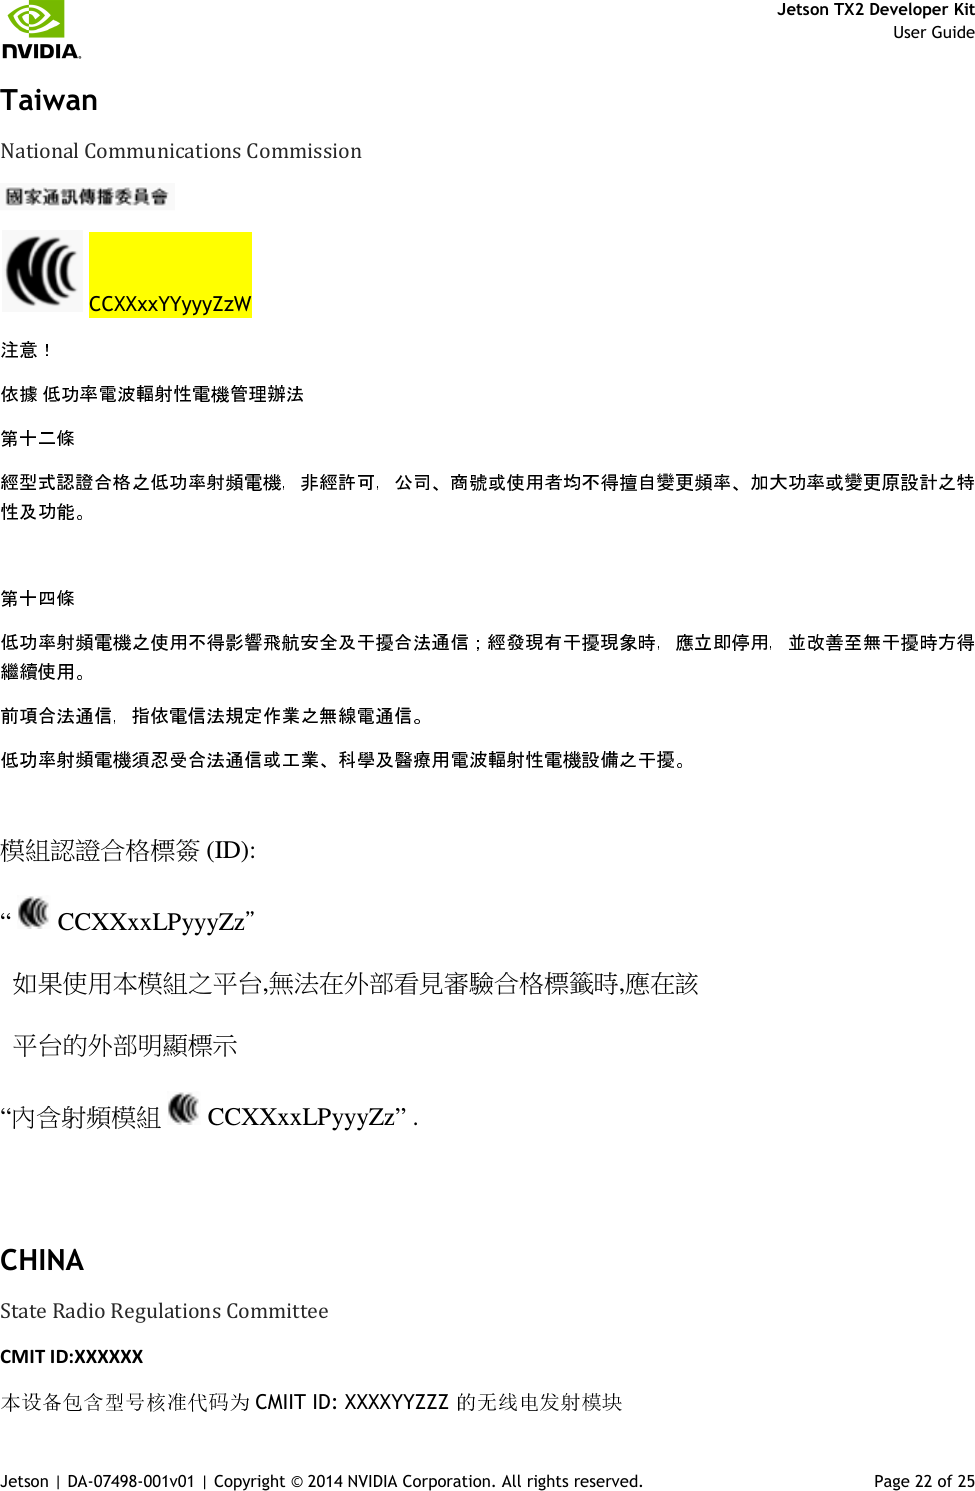     Jetson TX2 Developer Kit     User Guide Jetson | DA-07498-001v01 | Copyright © 2014 NVIDIA Corporation. All rights reserved.  Page 22 of 25 Taiwan  National Communications Commission     CCXXxxYYyyyZzW             模組認證合格標簽 (ID): “   CCXXxxLPyyyZz＂   如果使用本模組之平台,無法在外部看見審驗合格標籤時,應在該   平台的外部明顯標示 “內含射頻模組   CCXXxxLPyyyZz” .  CHINA State Radio Regulations Committee CMIT ID:XXXXXX  CMIIT ID: XXXXYYZZZ 